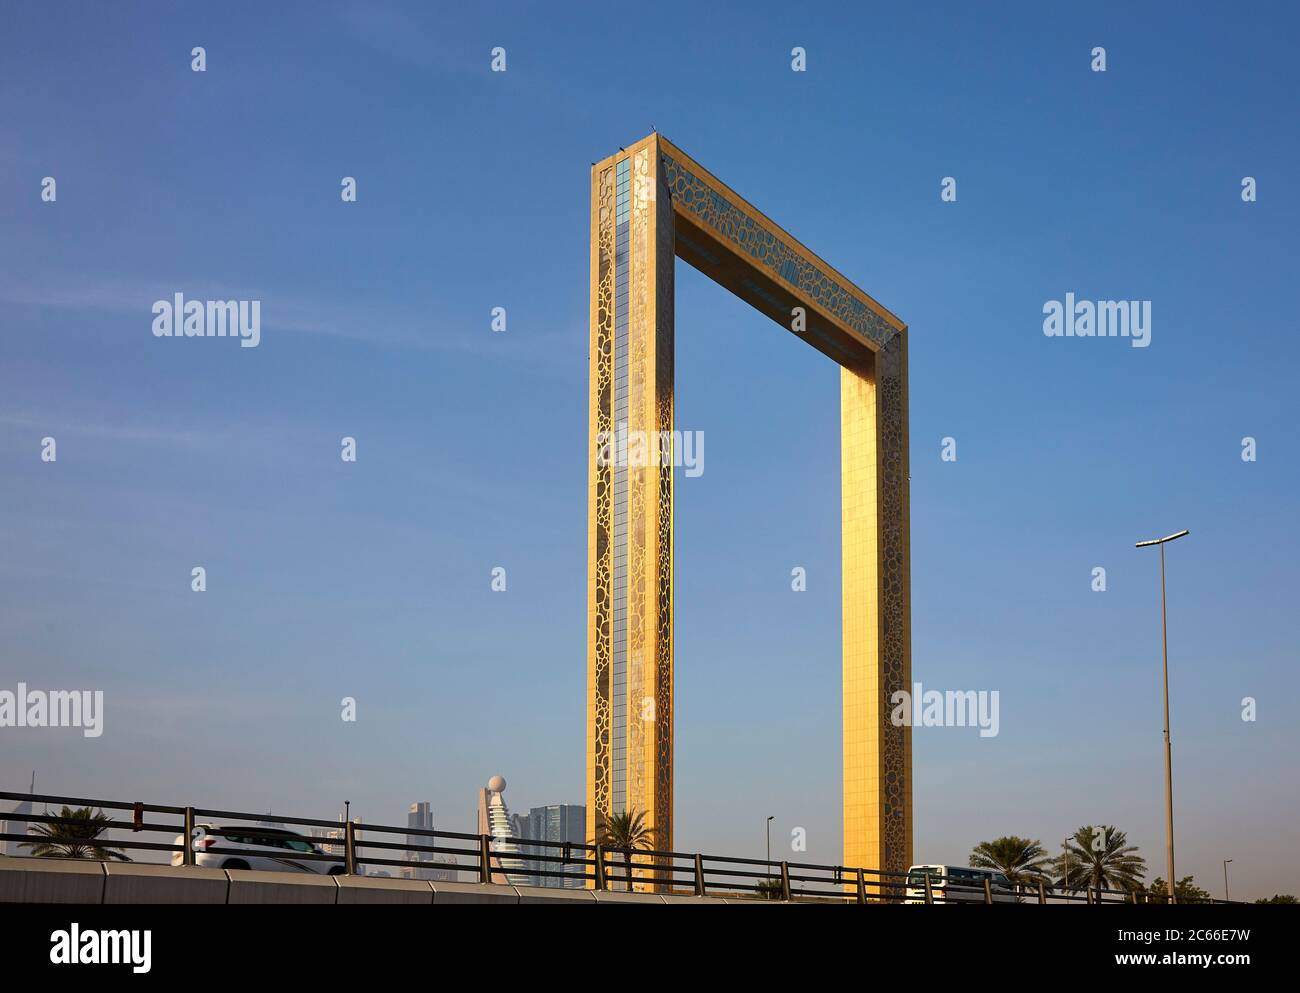 Dubai Frame, nuova attrazione con piattaforma panoramica nel Parco Zabeel, aperto nel gennaio 2018, Dubai, Emirati Arabi Uniti Foto Stock